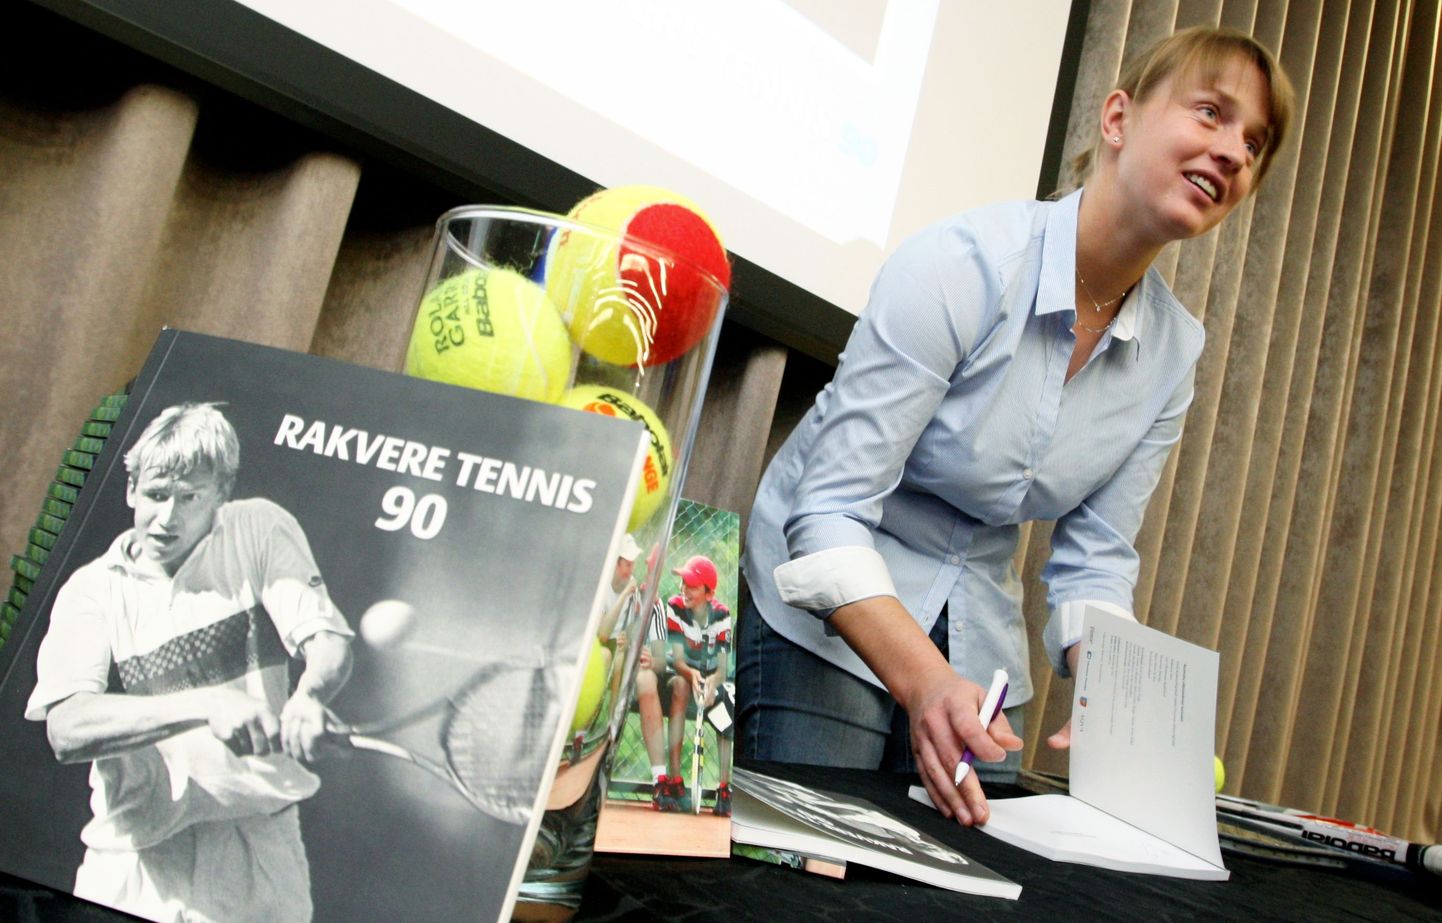 Rakvere tennisetreener Maret Ani raamatu "Rakvere tennis 90" esitlusel.